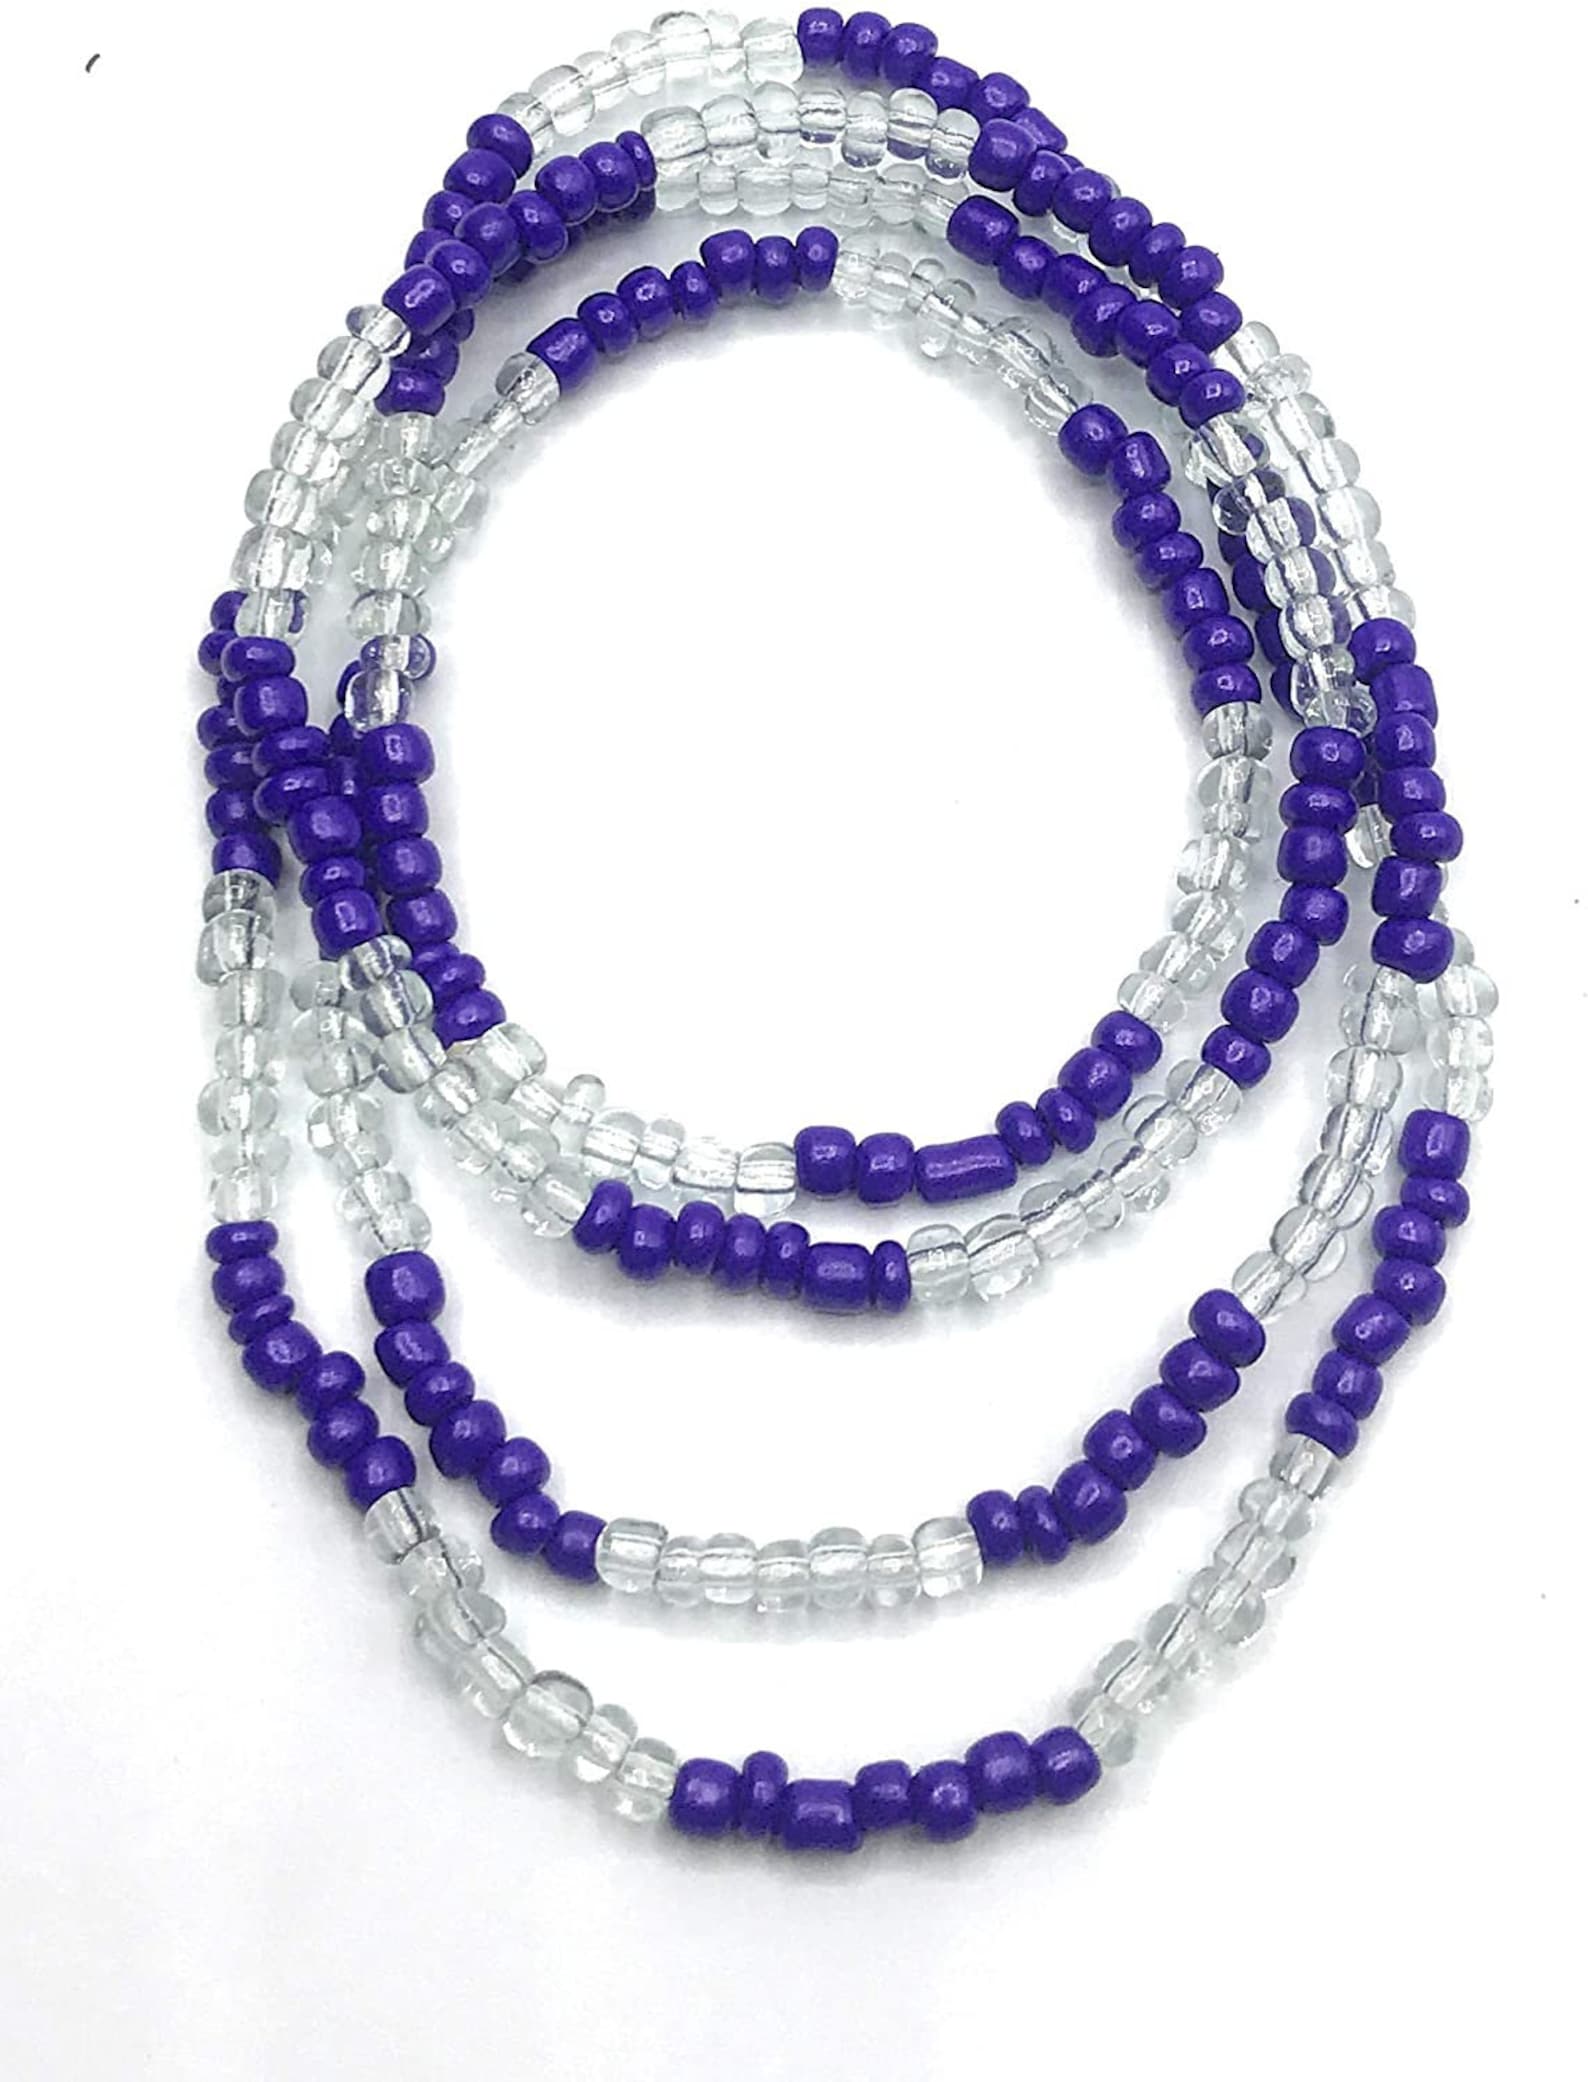 Elekes sacred beads for protection | Etsy